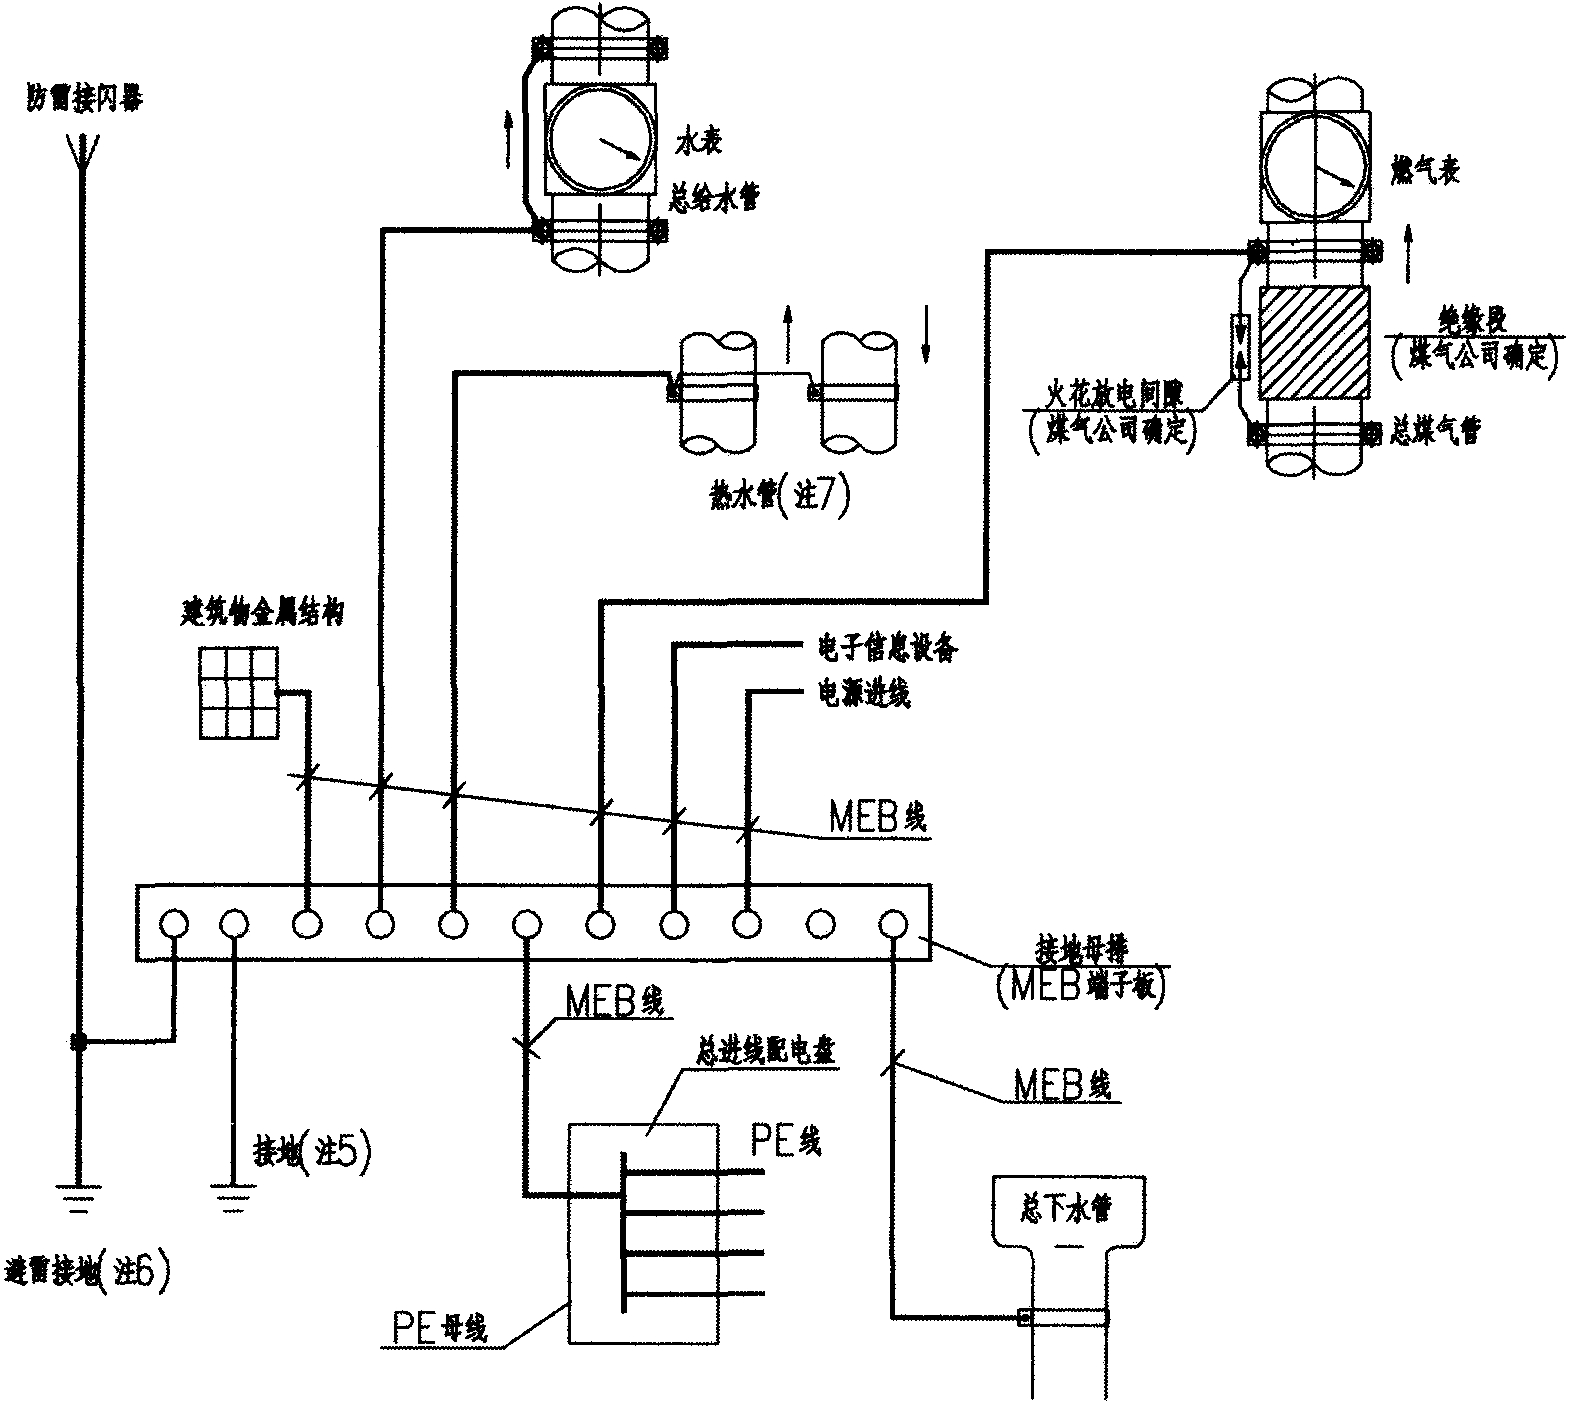 总等电位联结系统图示例 卫生间局部等电位联结 平剖面示例